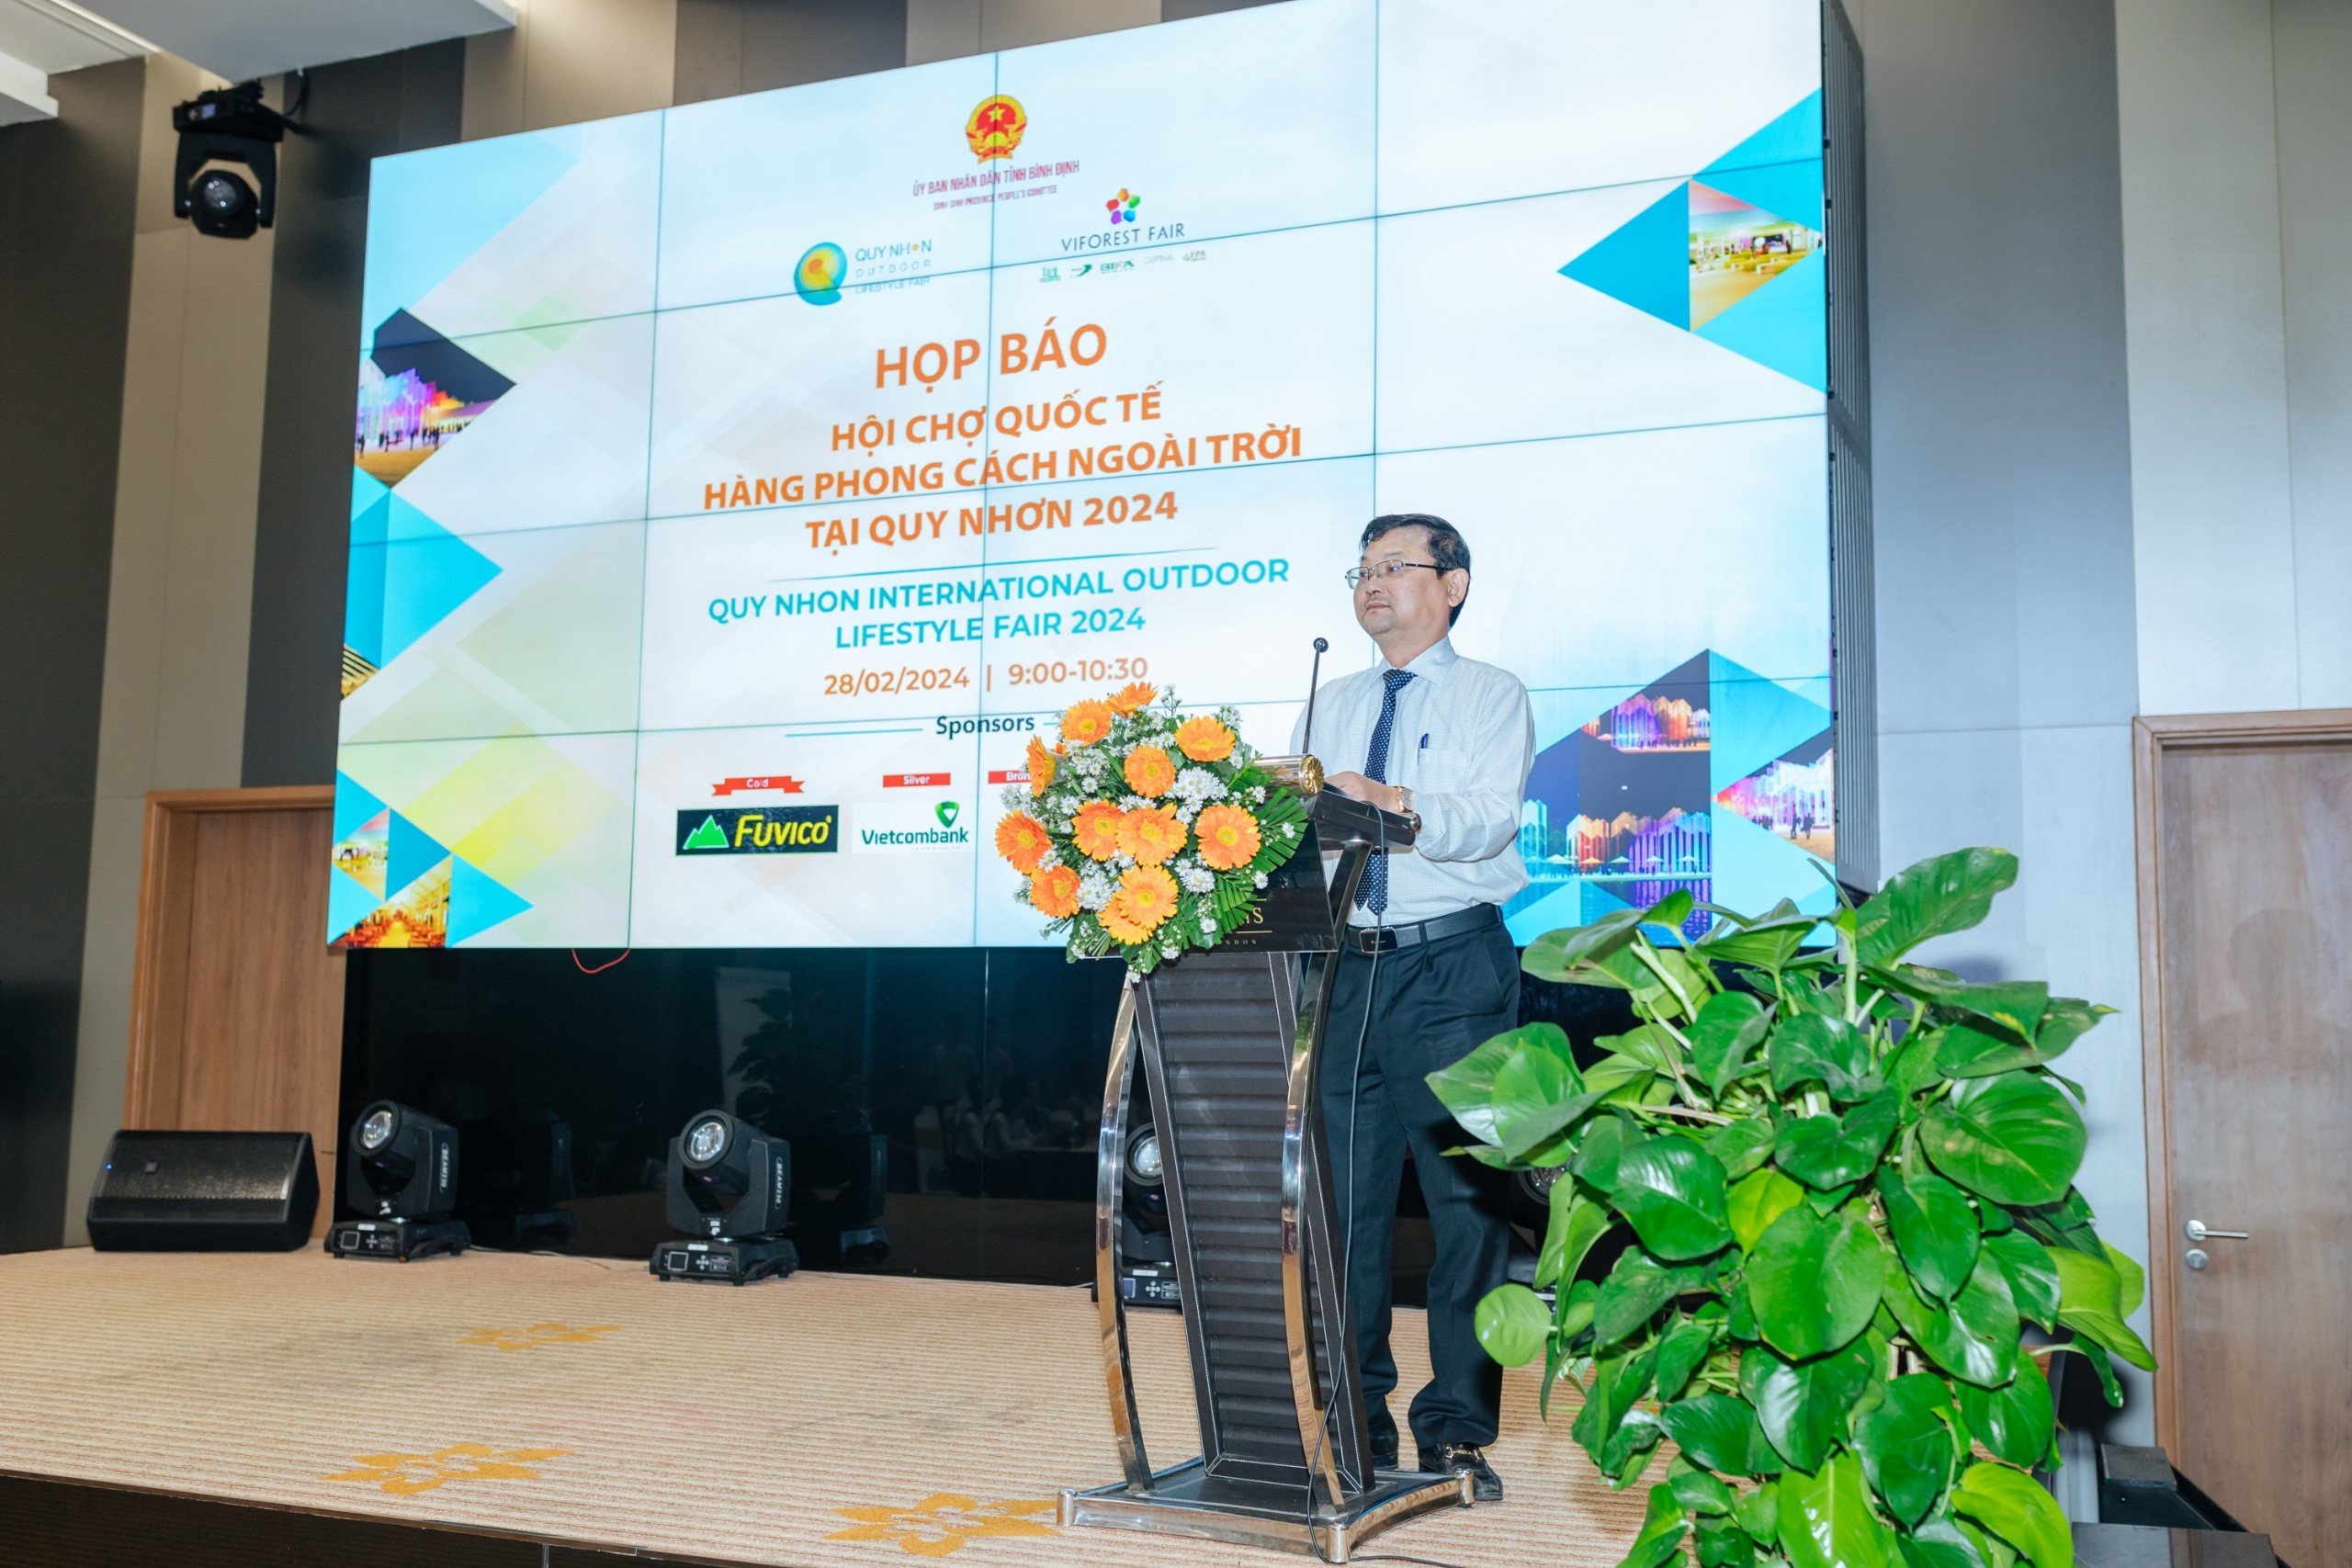 Sắp diễn ra Hội chợ quốc tế hàng phong cách ngoài trời tại Quy Nhơn 2024 (Q-FAIR 2024)